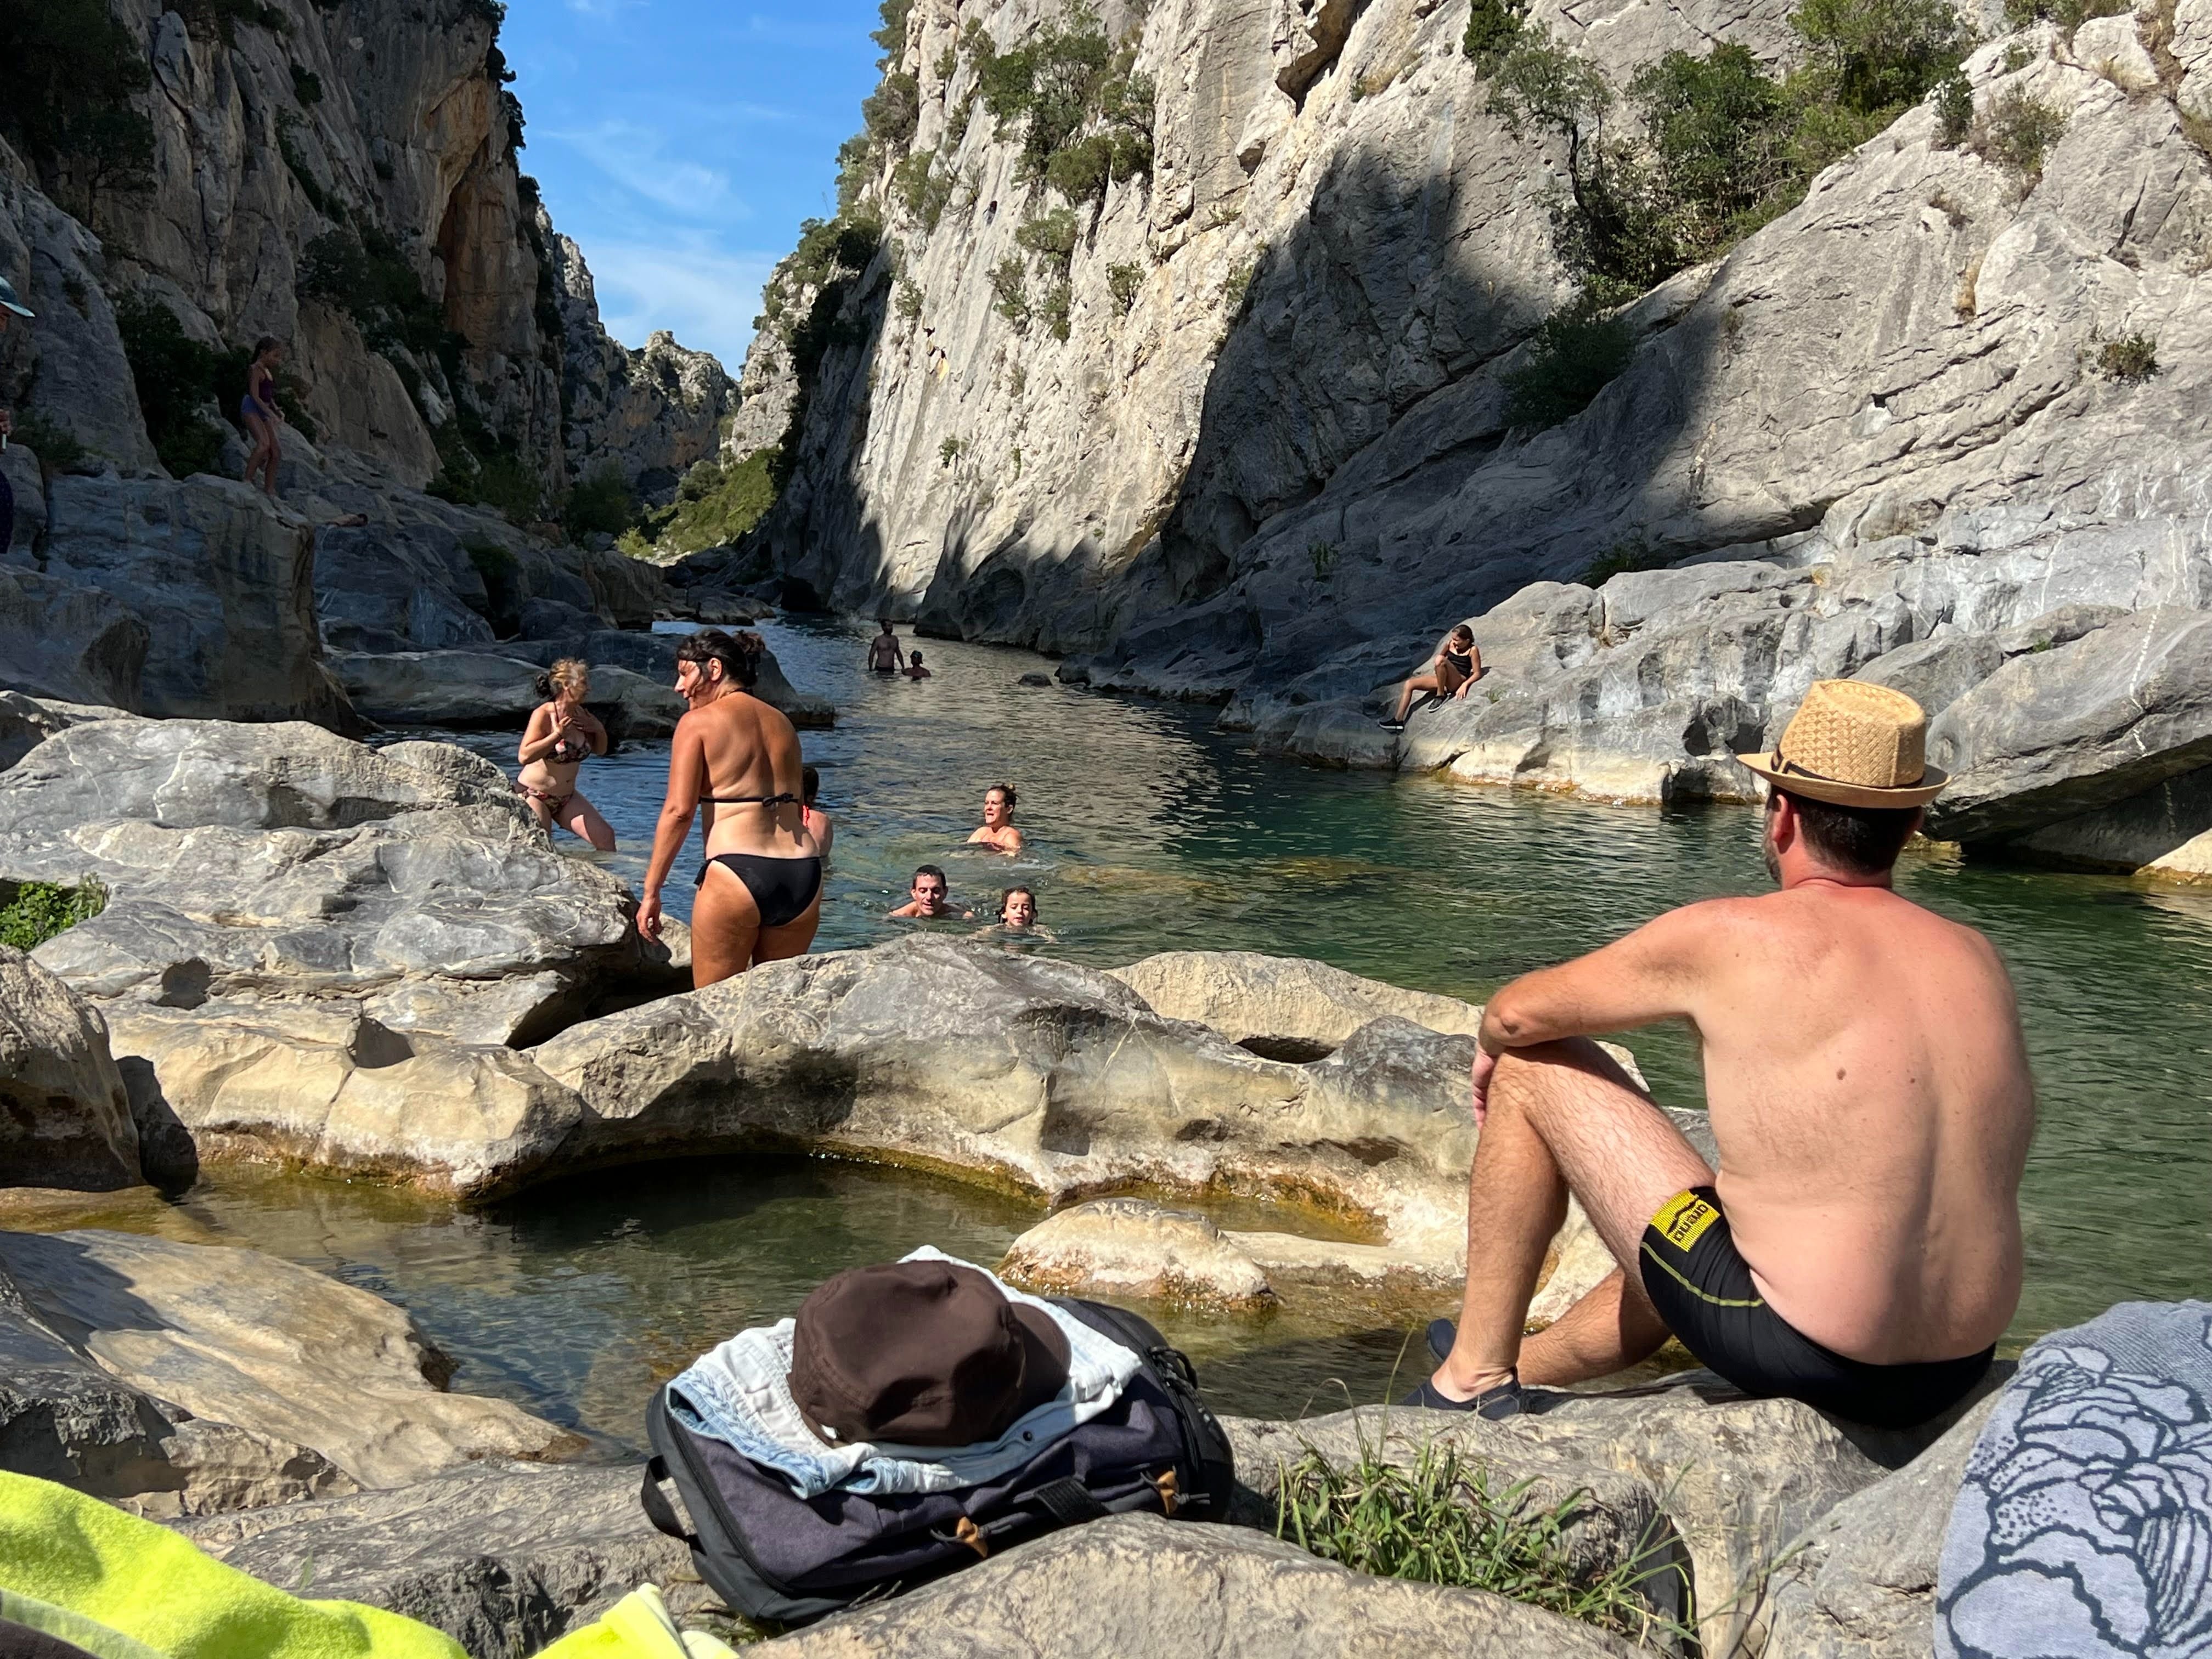 Autorisée depuis le 27 juin seulement, la baignade dans les gorges de Gouleyrous, à Tautavel (Pyrénées-Orientales), était interdite depuis 2006 en raison de risques d’éboulement. LP/ Christian Goutorbe